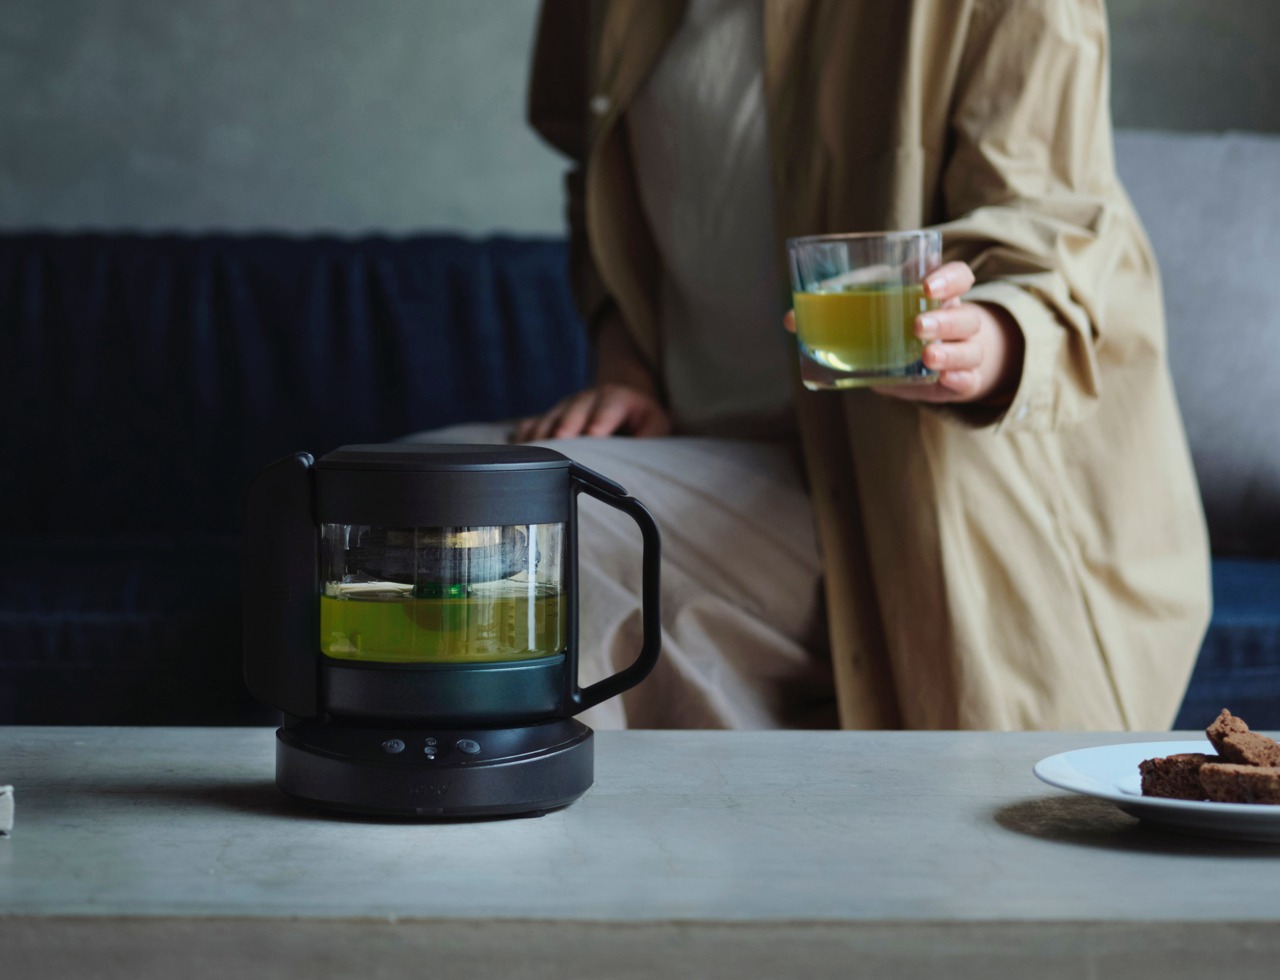 Relaxing Countertop Tea Brewers : Smart Tea Maker